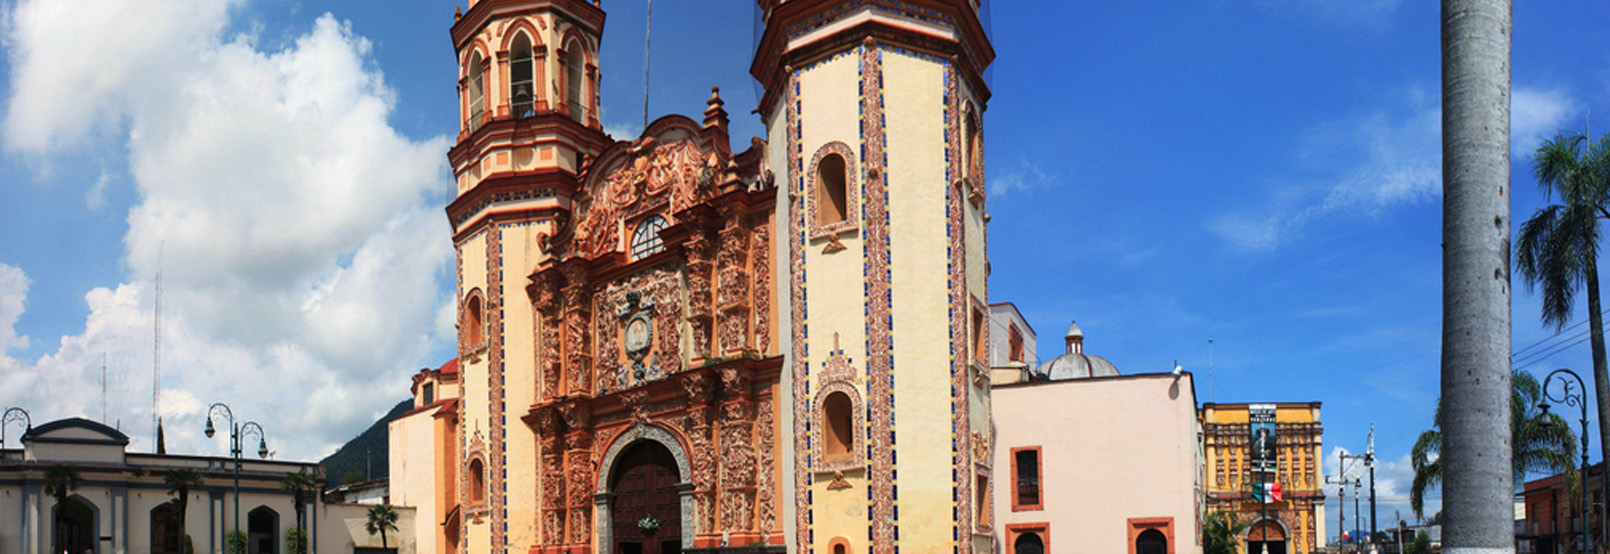 arquitectura colonial orizaba